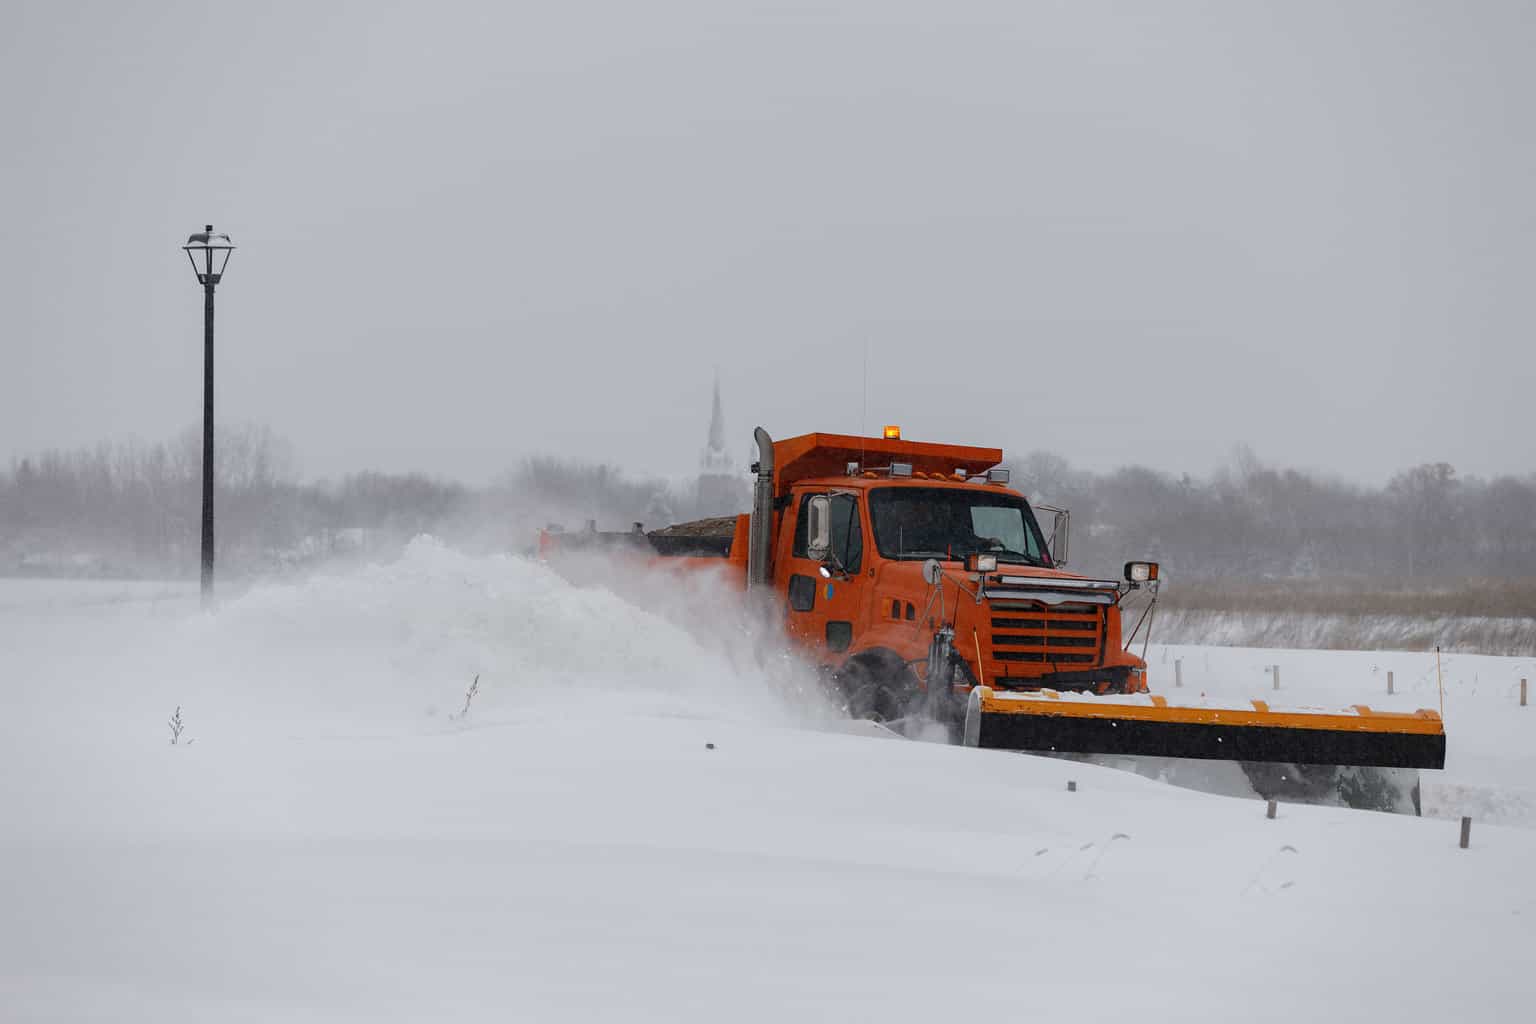 A truck stuck in a snowstorm | Photo: Shutterstock